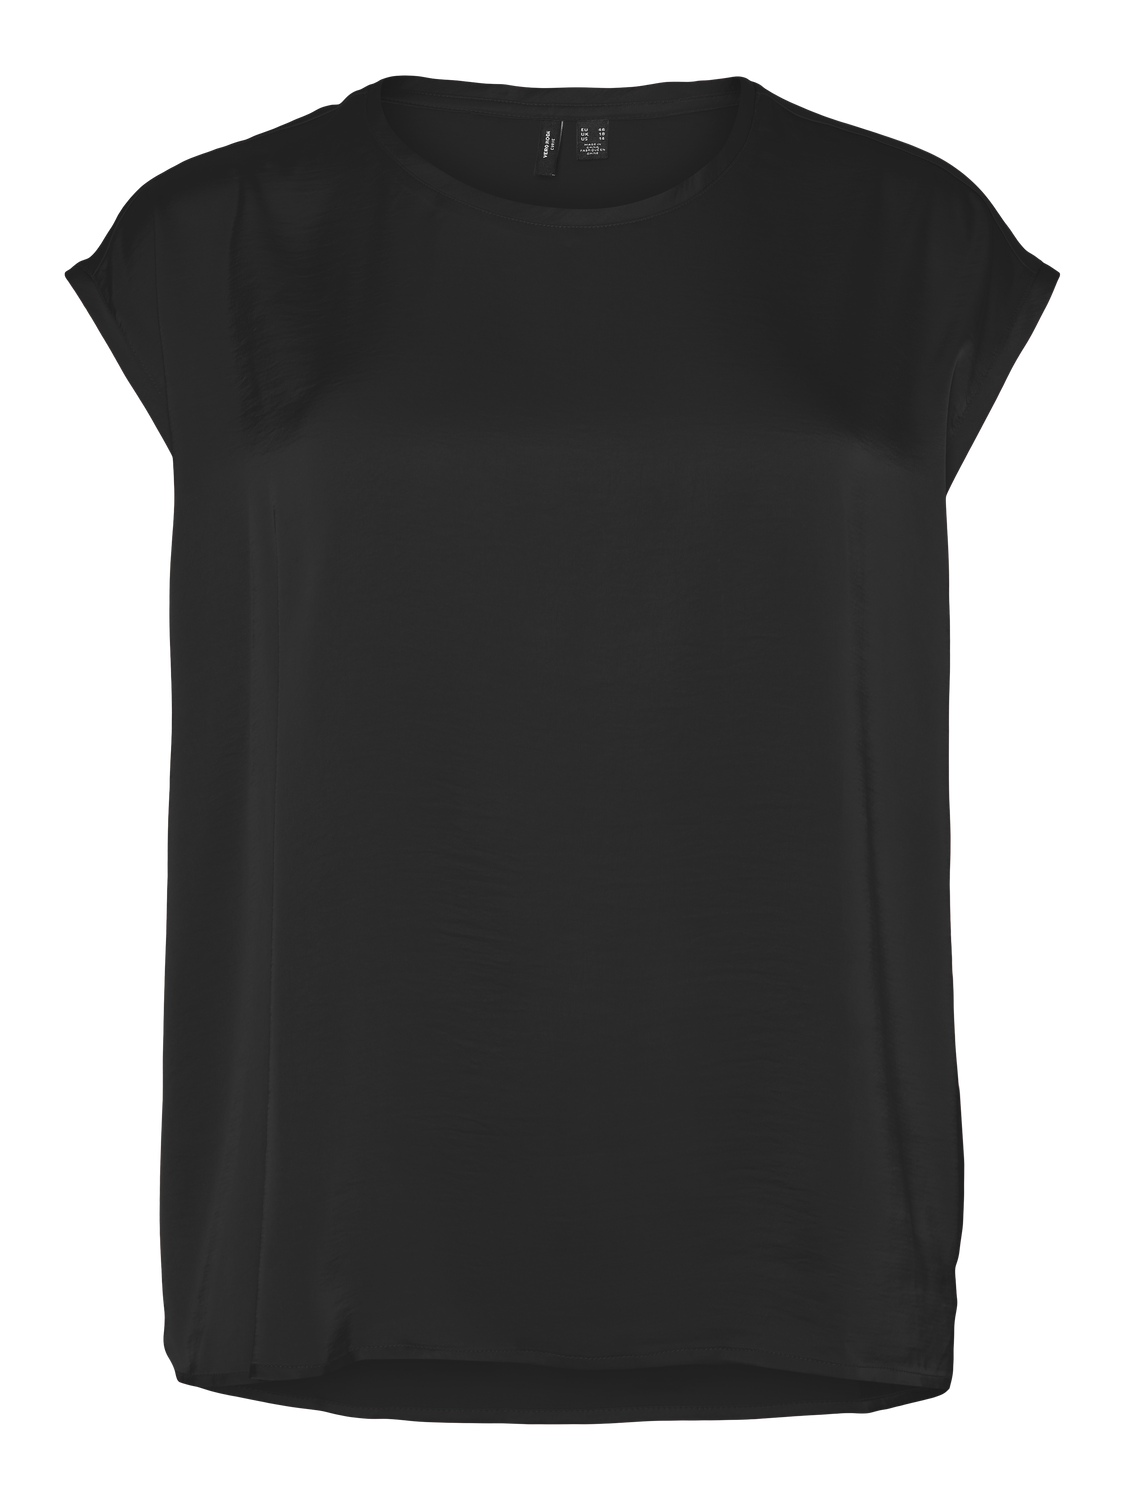 VMCREBA T-Shirts & Tops - Black